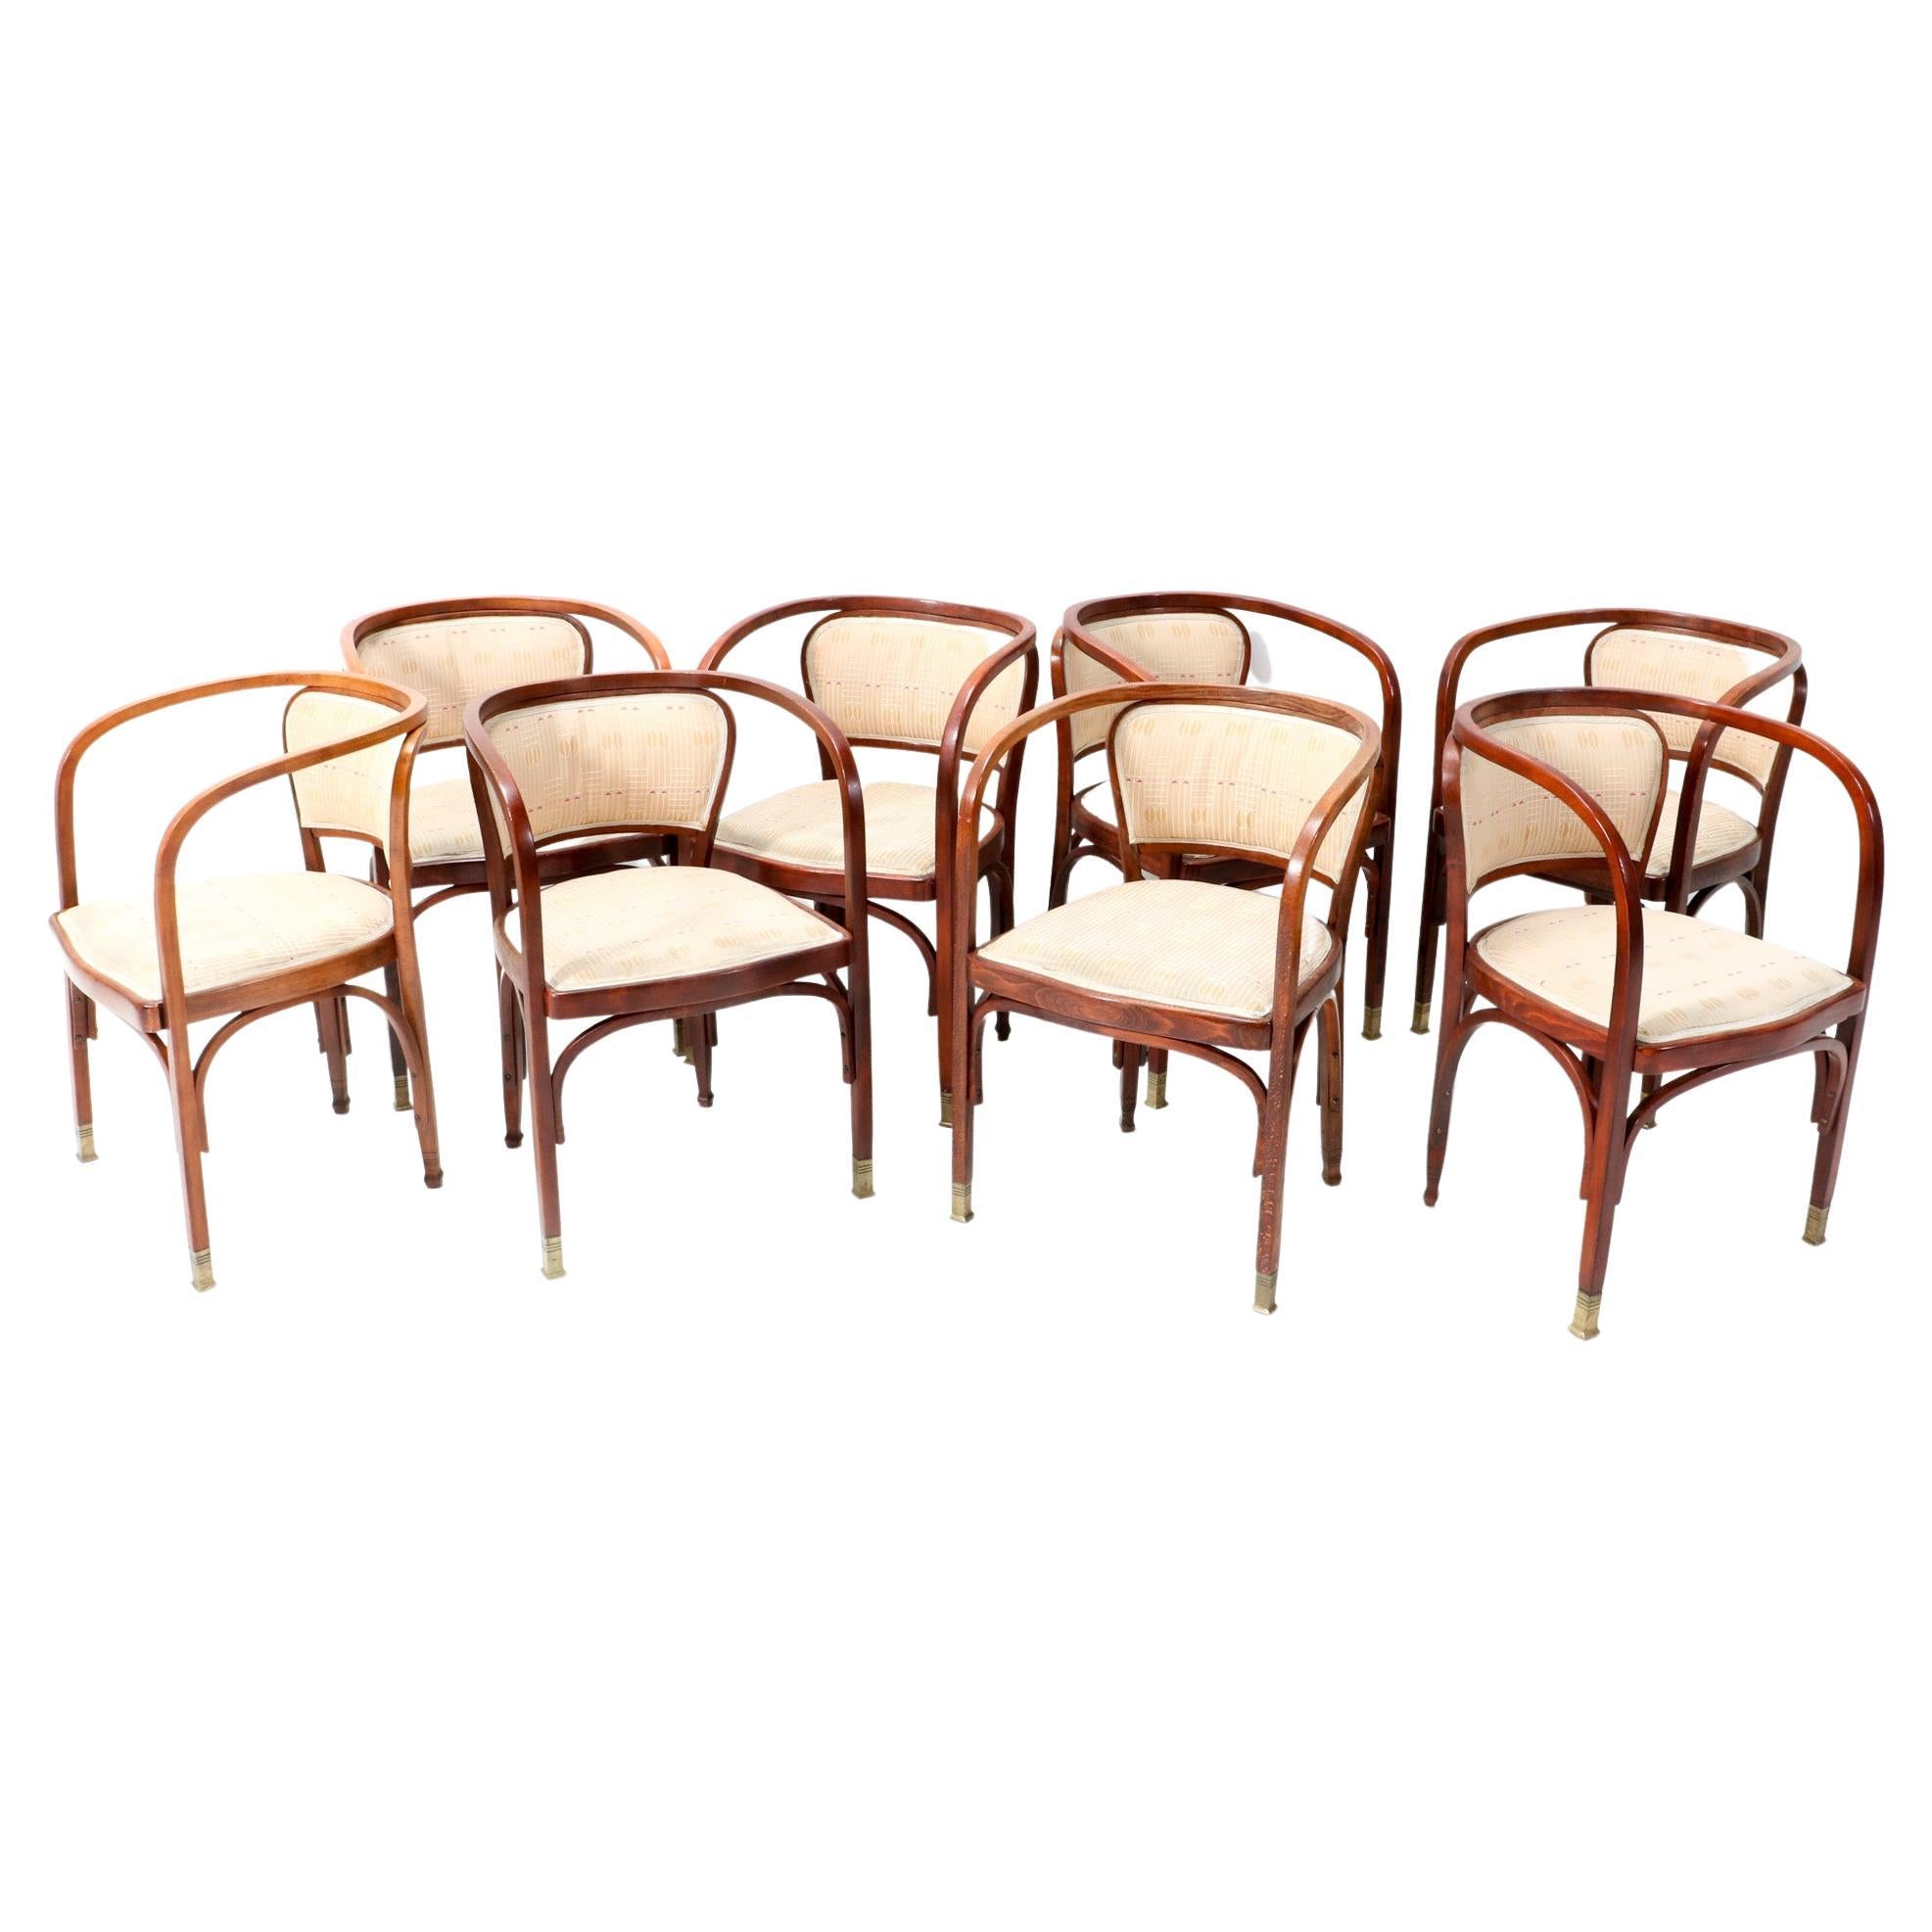 Huit fauteuils de la Sécession viennoise de Gustav Siegel pour Jacob & Josef Kohn, années 1900